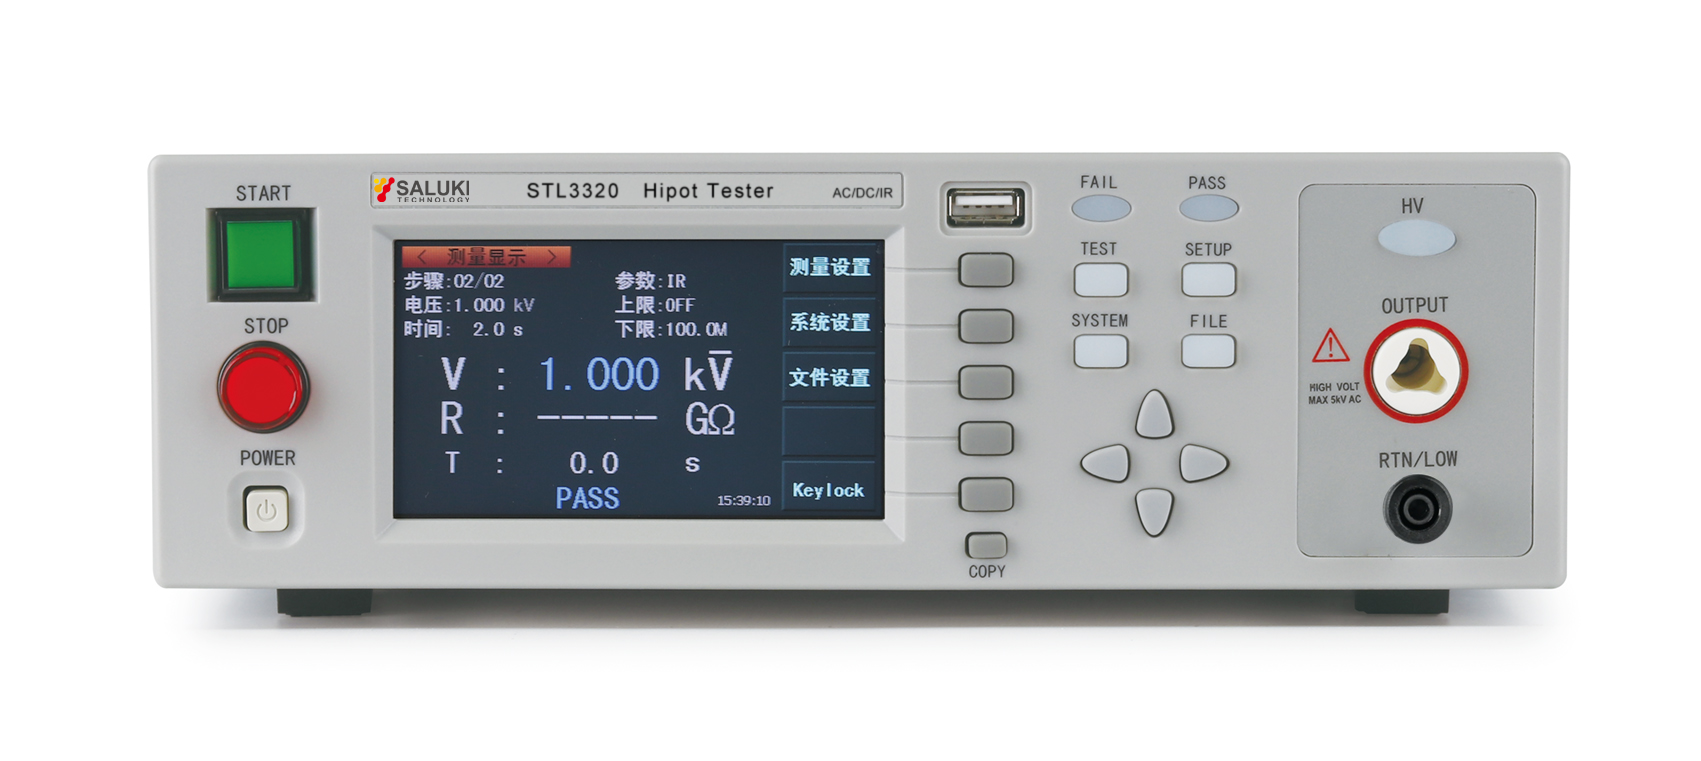 STL3320 Hipot Tester (AC/DC/IR)